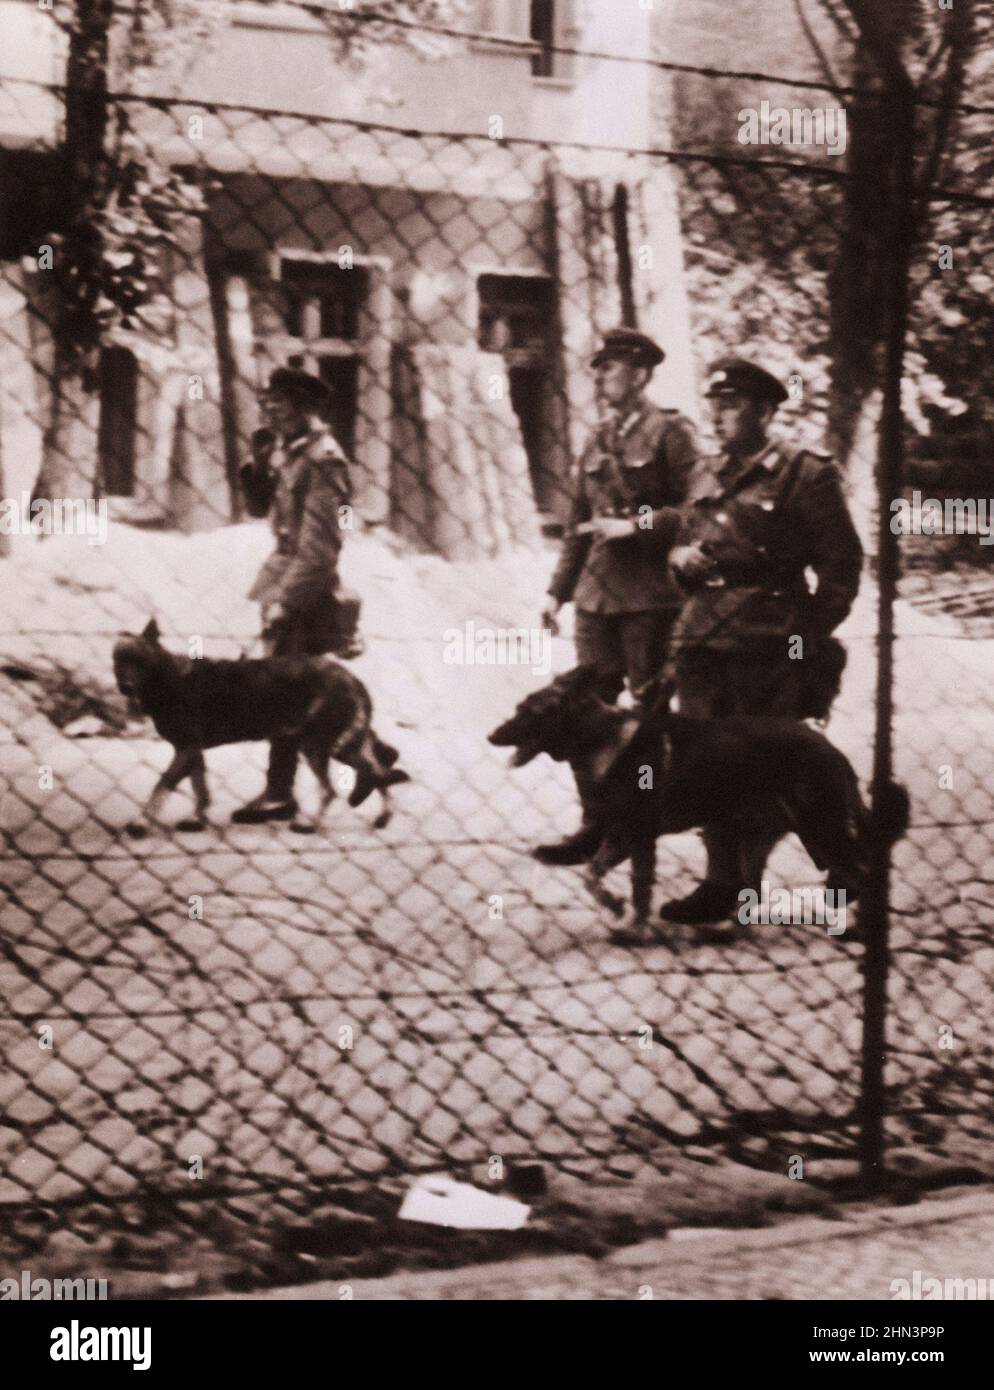 Foto vintage de la crisis de Berlín de 1961: Construyendo el Wall Manhunt - Los guardias fronterizos del este de Alemania utilizan perros para rastrear a los escapes que intentan cruzar el Foto de stock